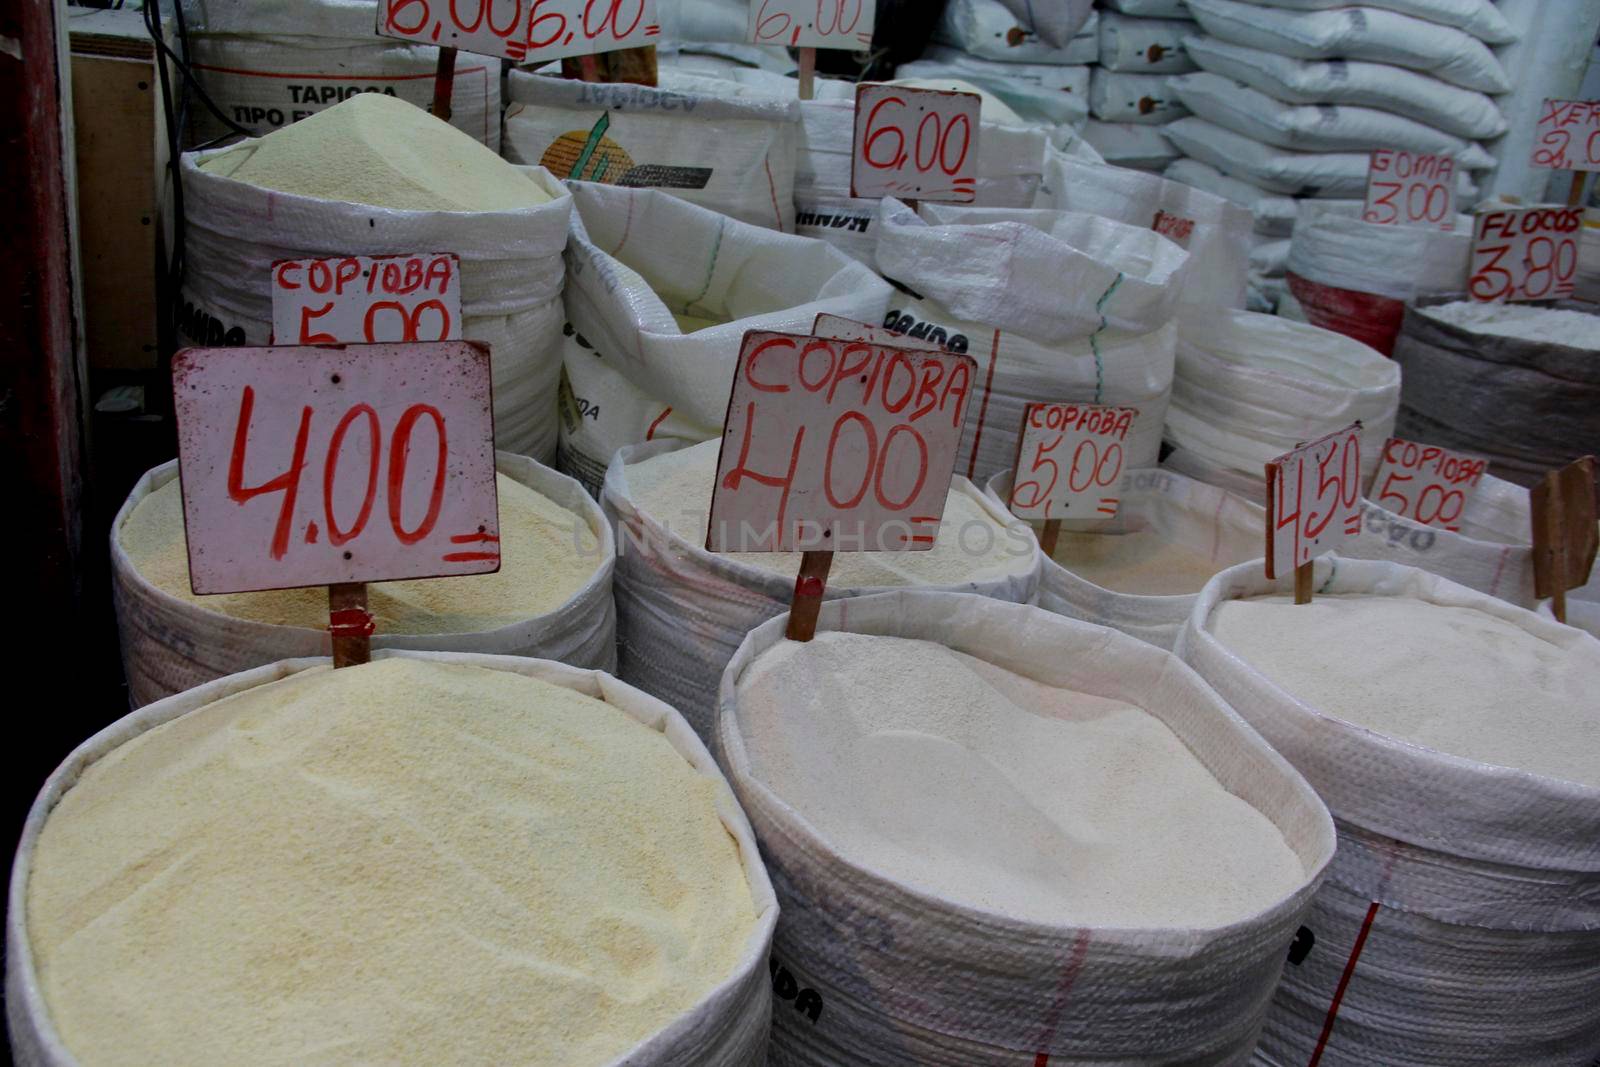 manioc flour for sale in feira de salvador by joasouza